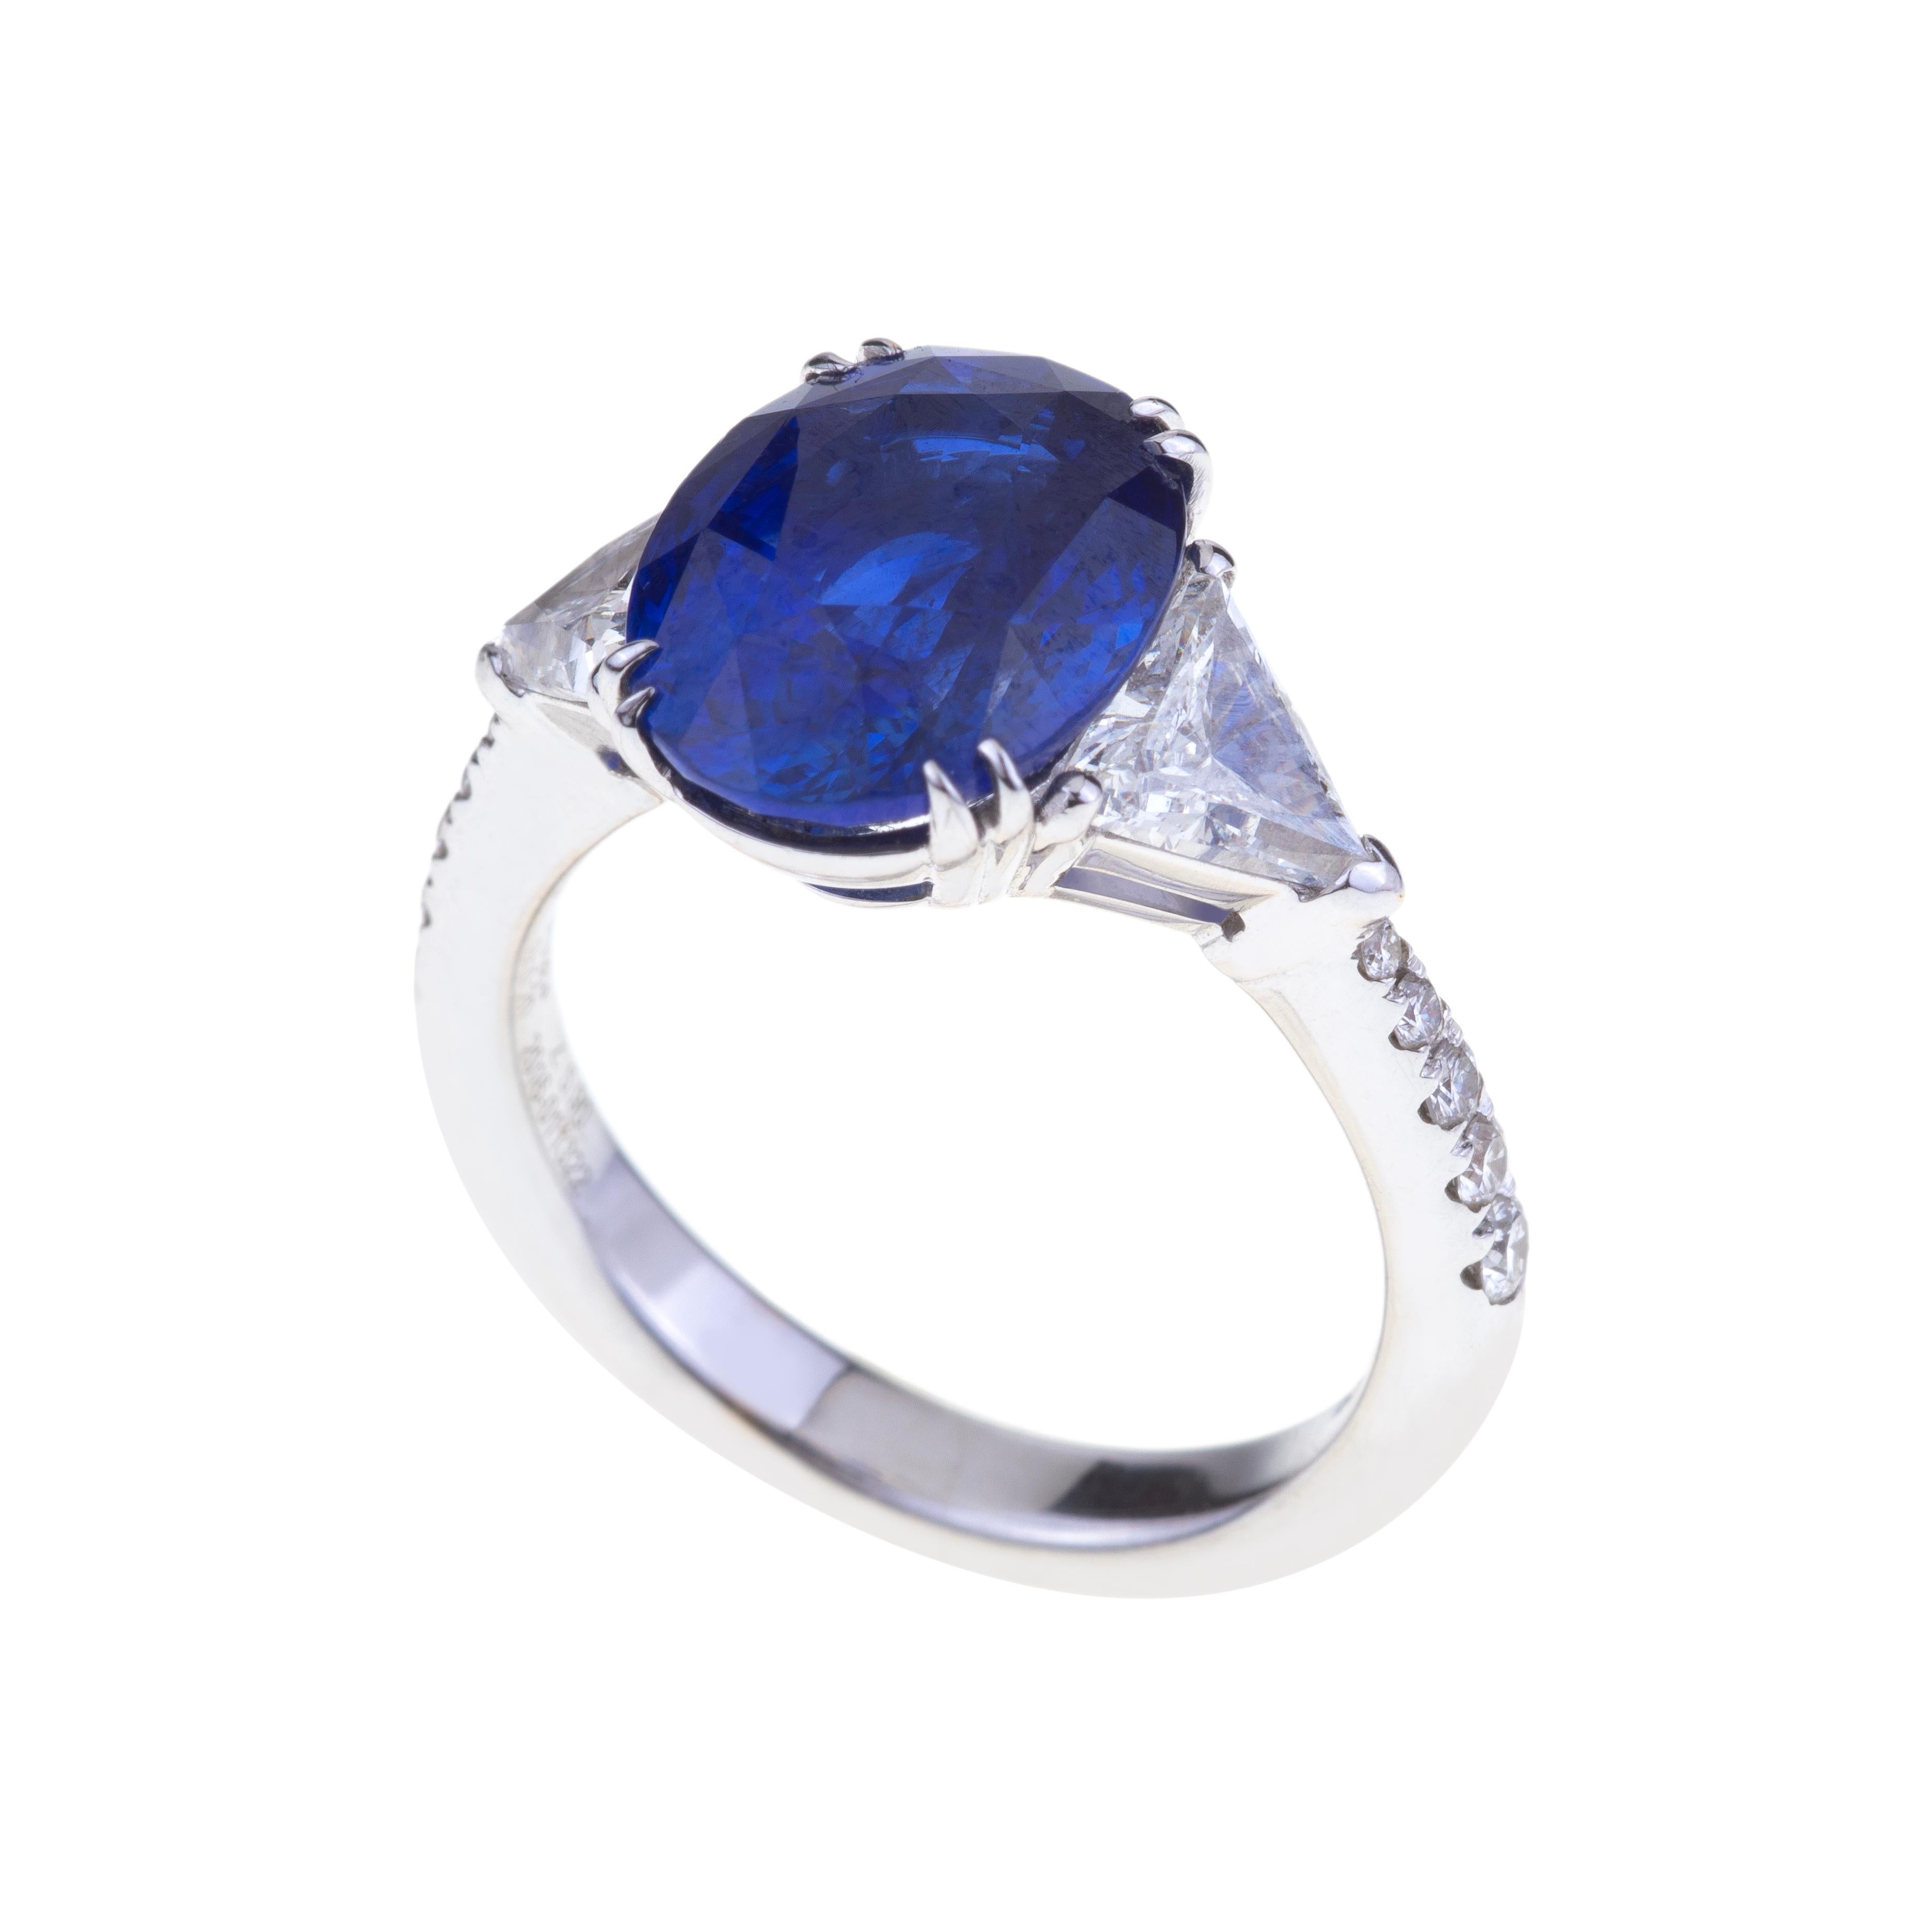 Taille ovale Superbe bague saphirs bleus ovales ct. 5,90 carats avec diamants. Stockage unique en vente